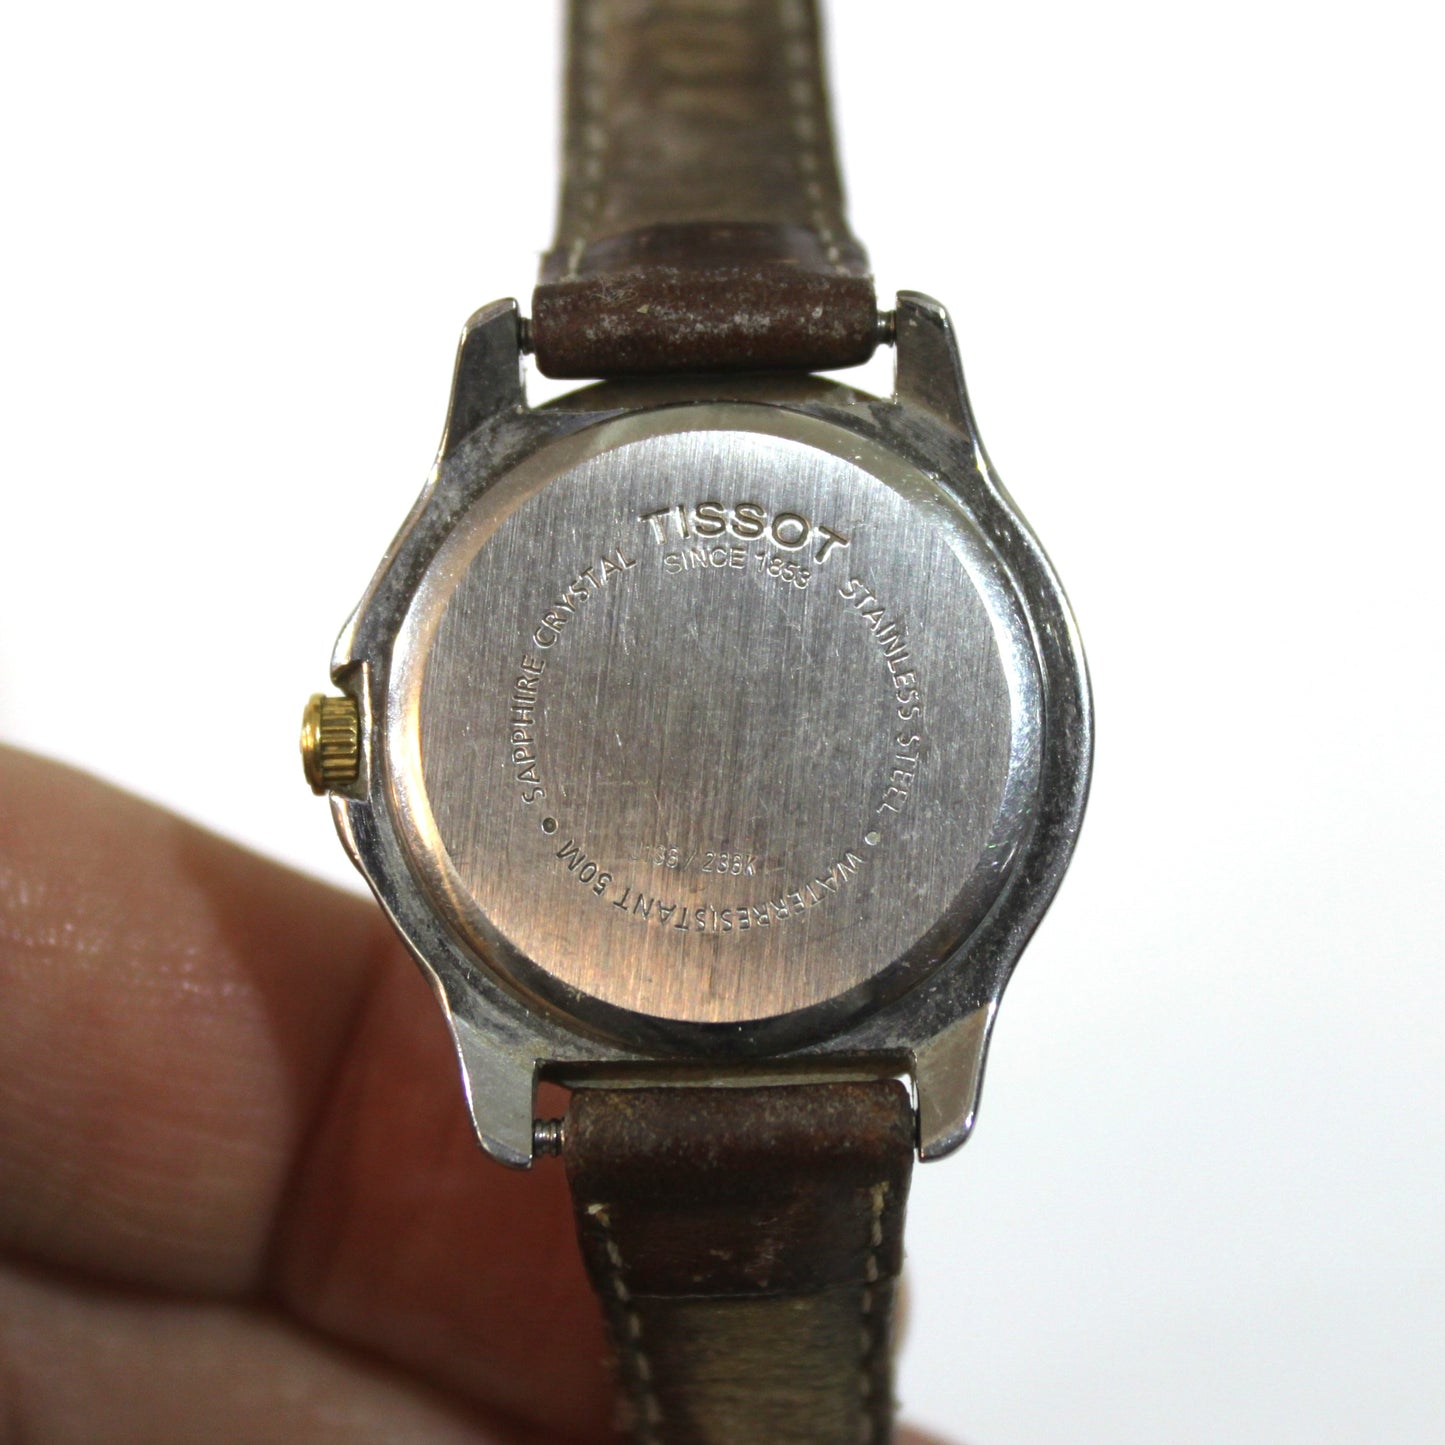 Reloj de pulsera Tissot PR 50 para dama